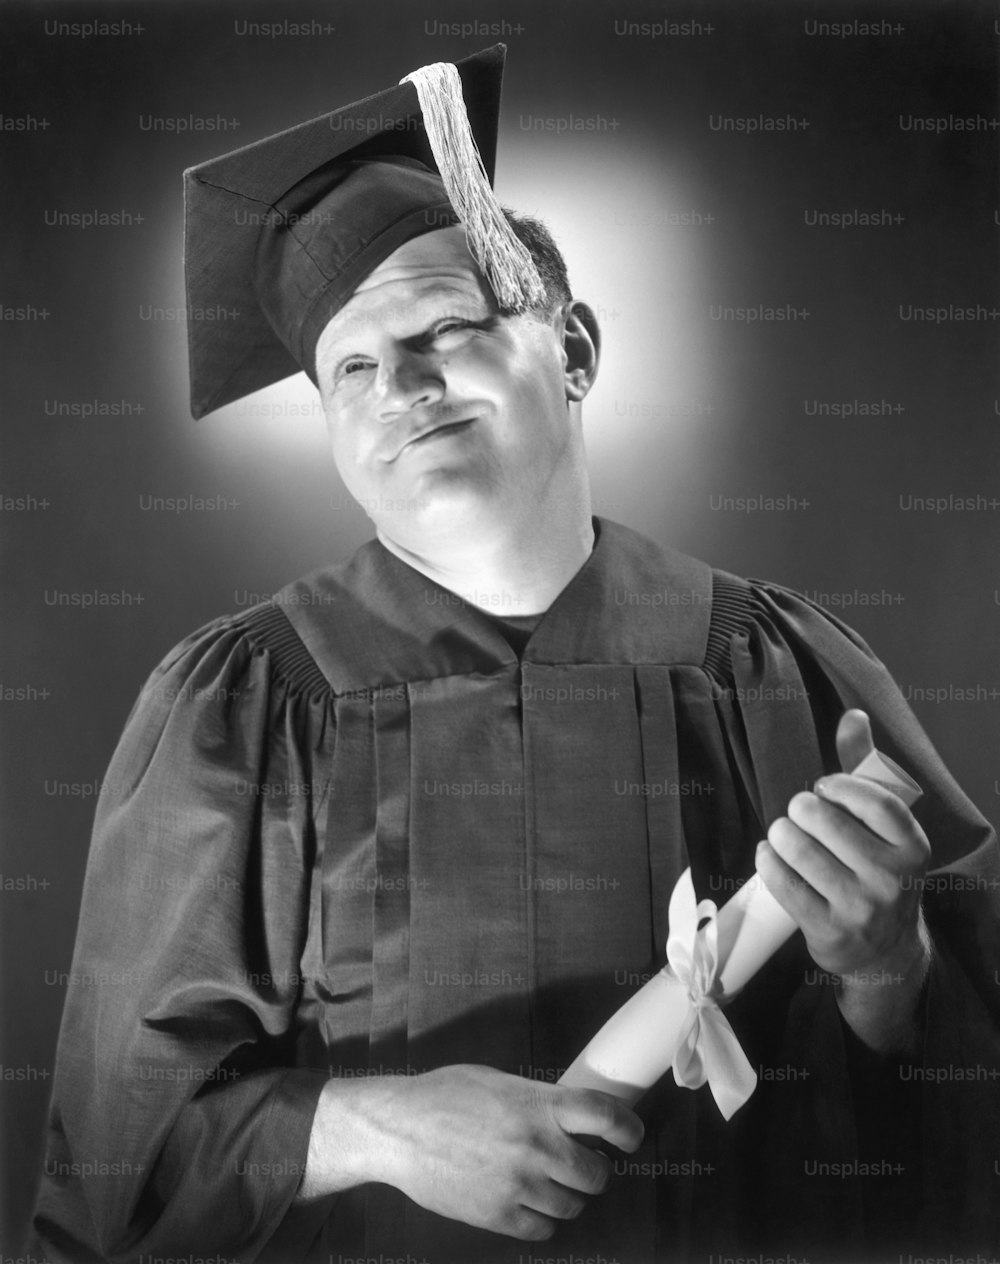 STATI UNITI - 1950 CIRCA: Ritratto di uomo felice in berretto e abito con diploma.